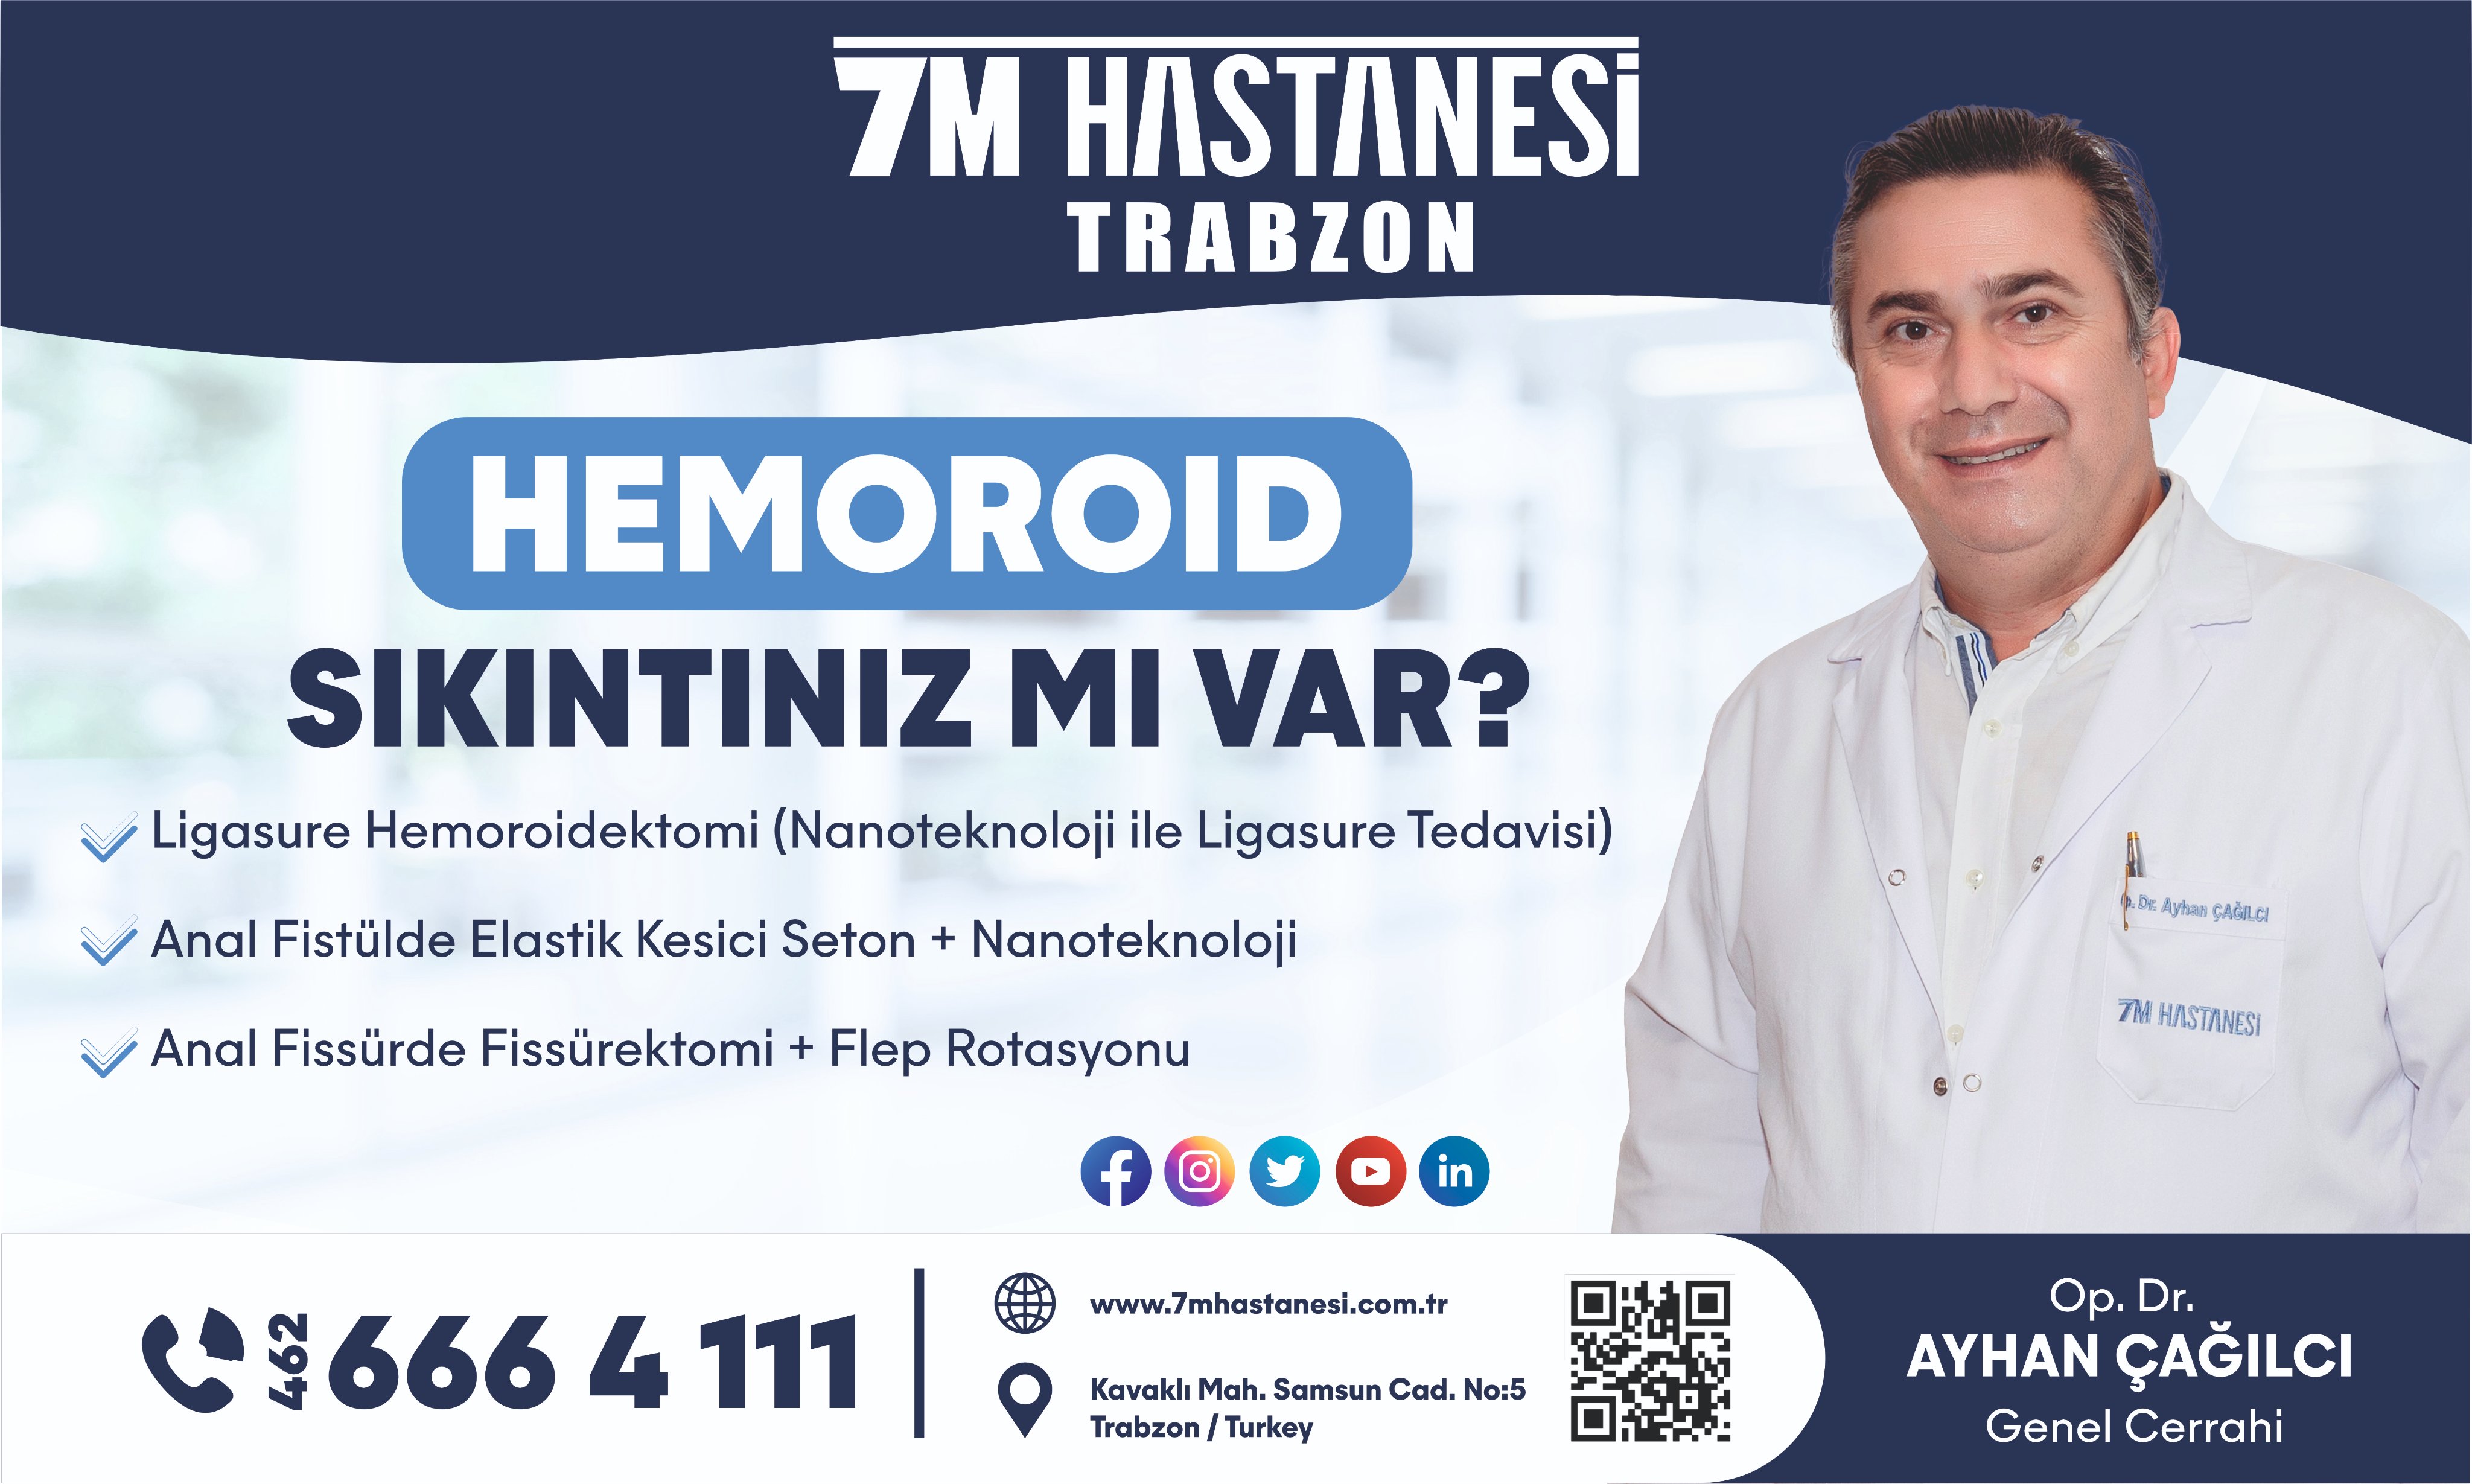 7M Hastanesi (@7MHastanesi) / Twitter